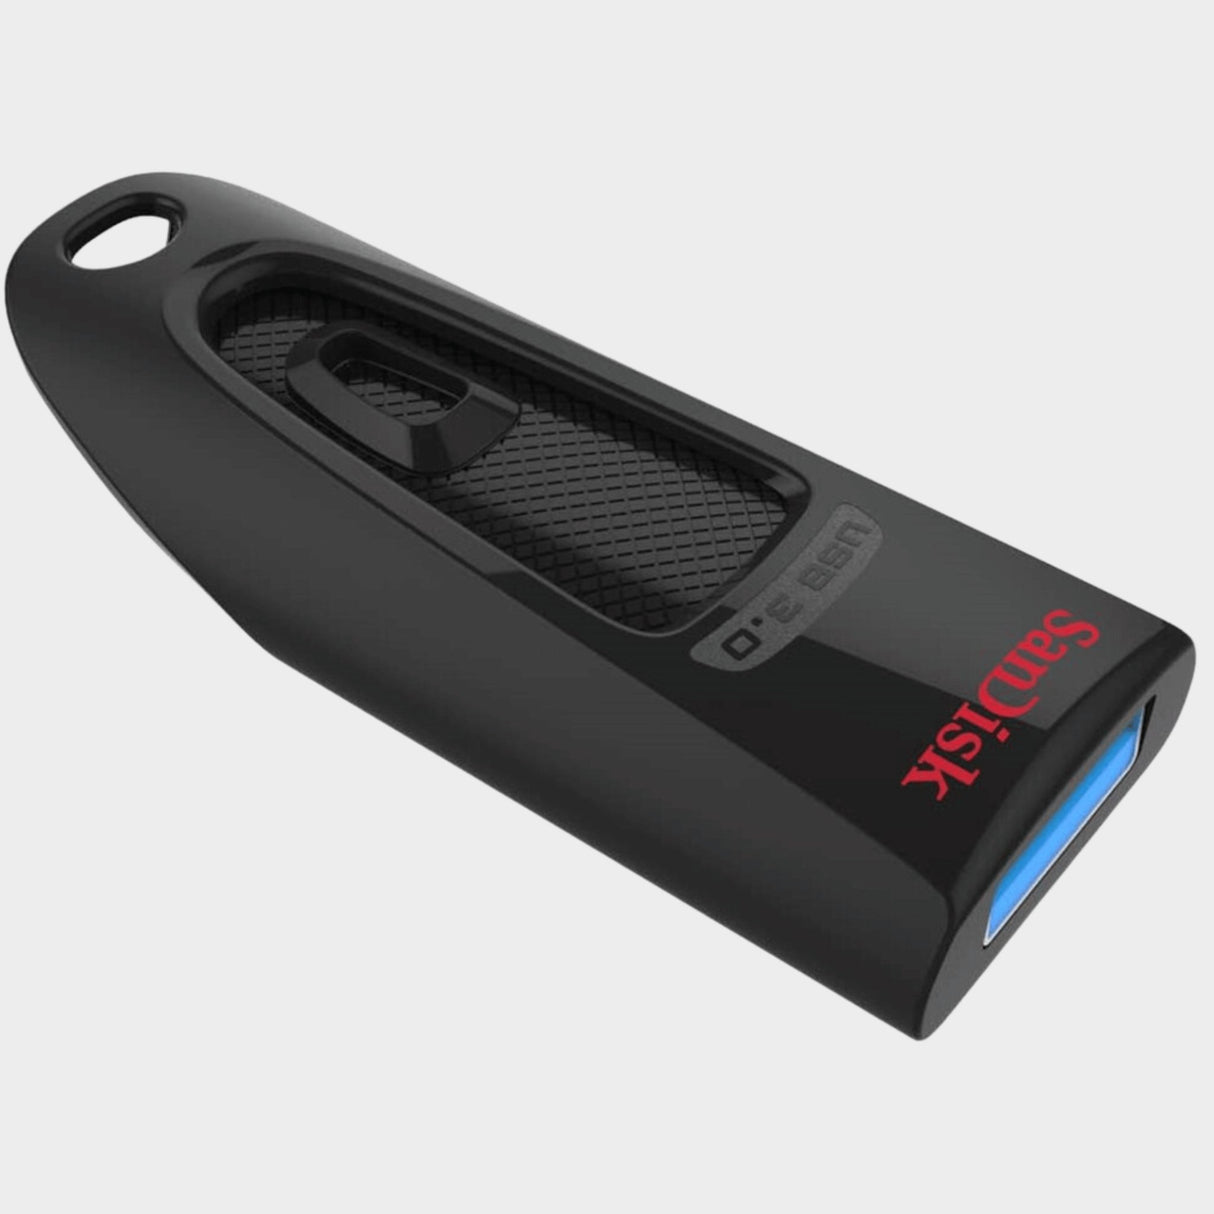 SanDisk 16GB Ultra USB 3.0 Flash Drive – Black  - KWT Tech Mart